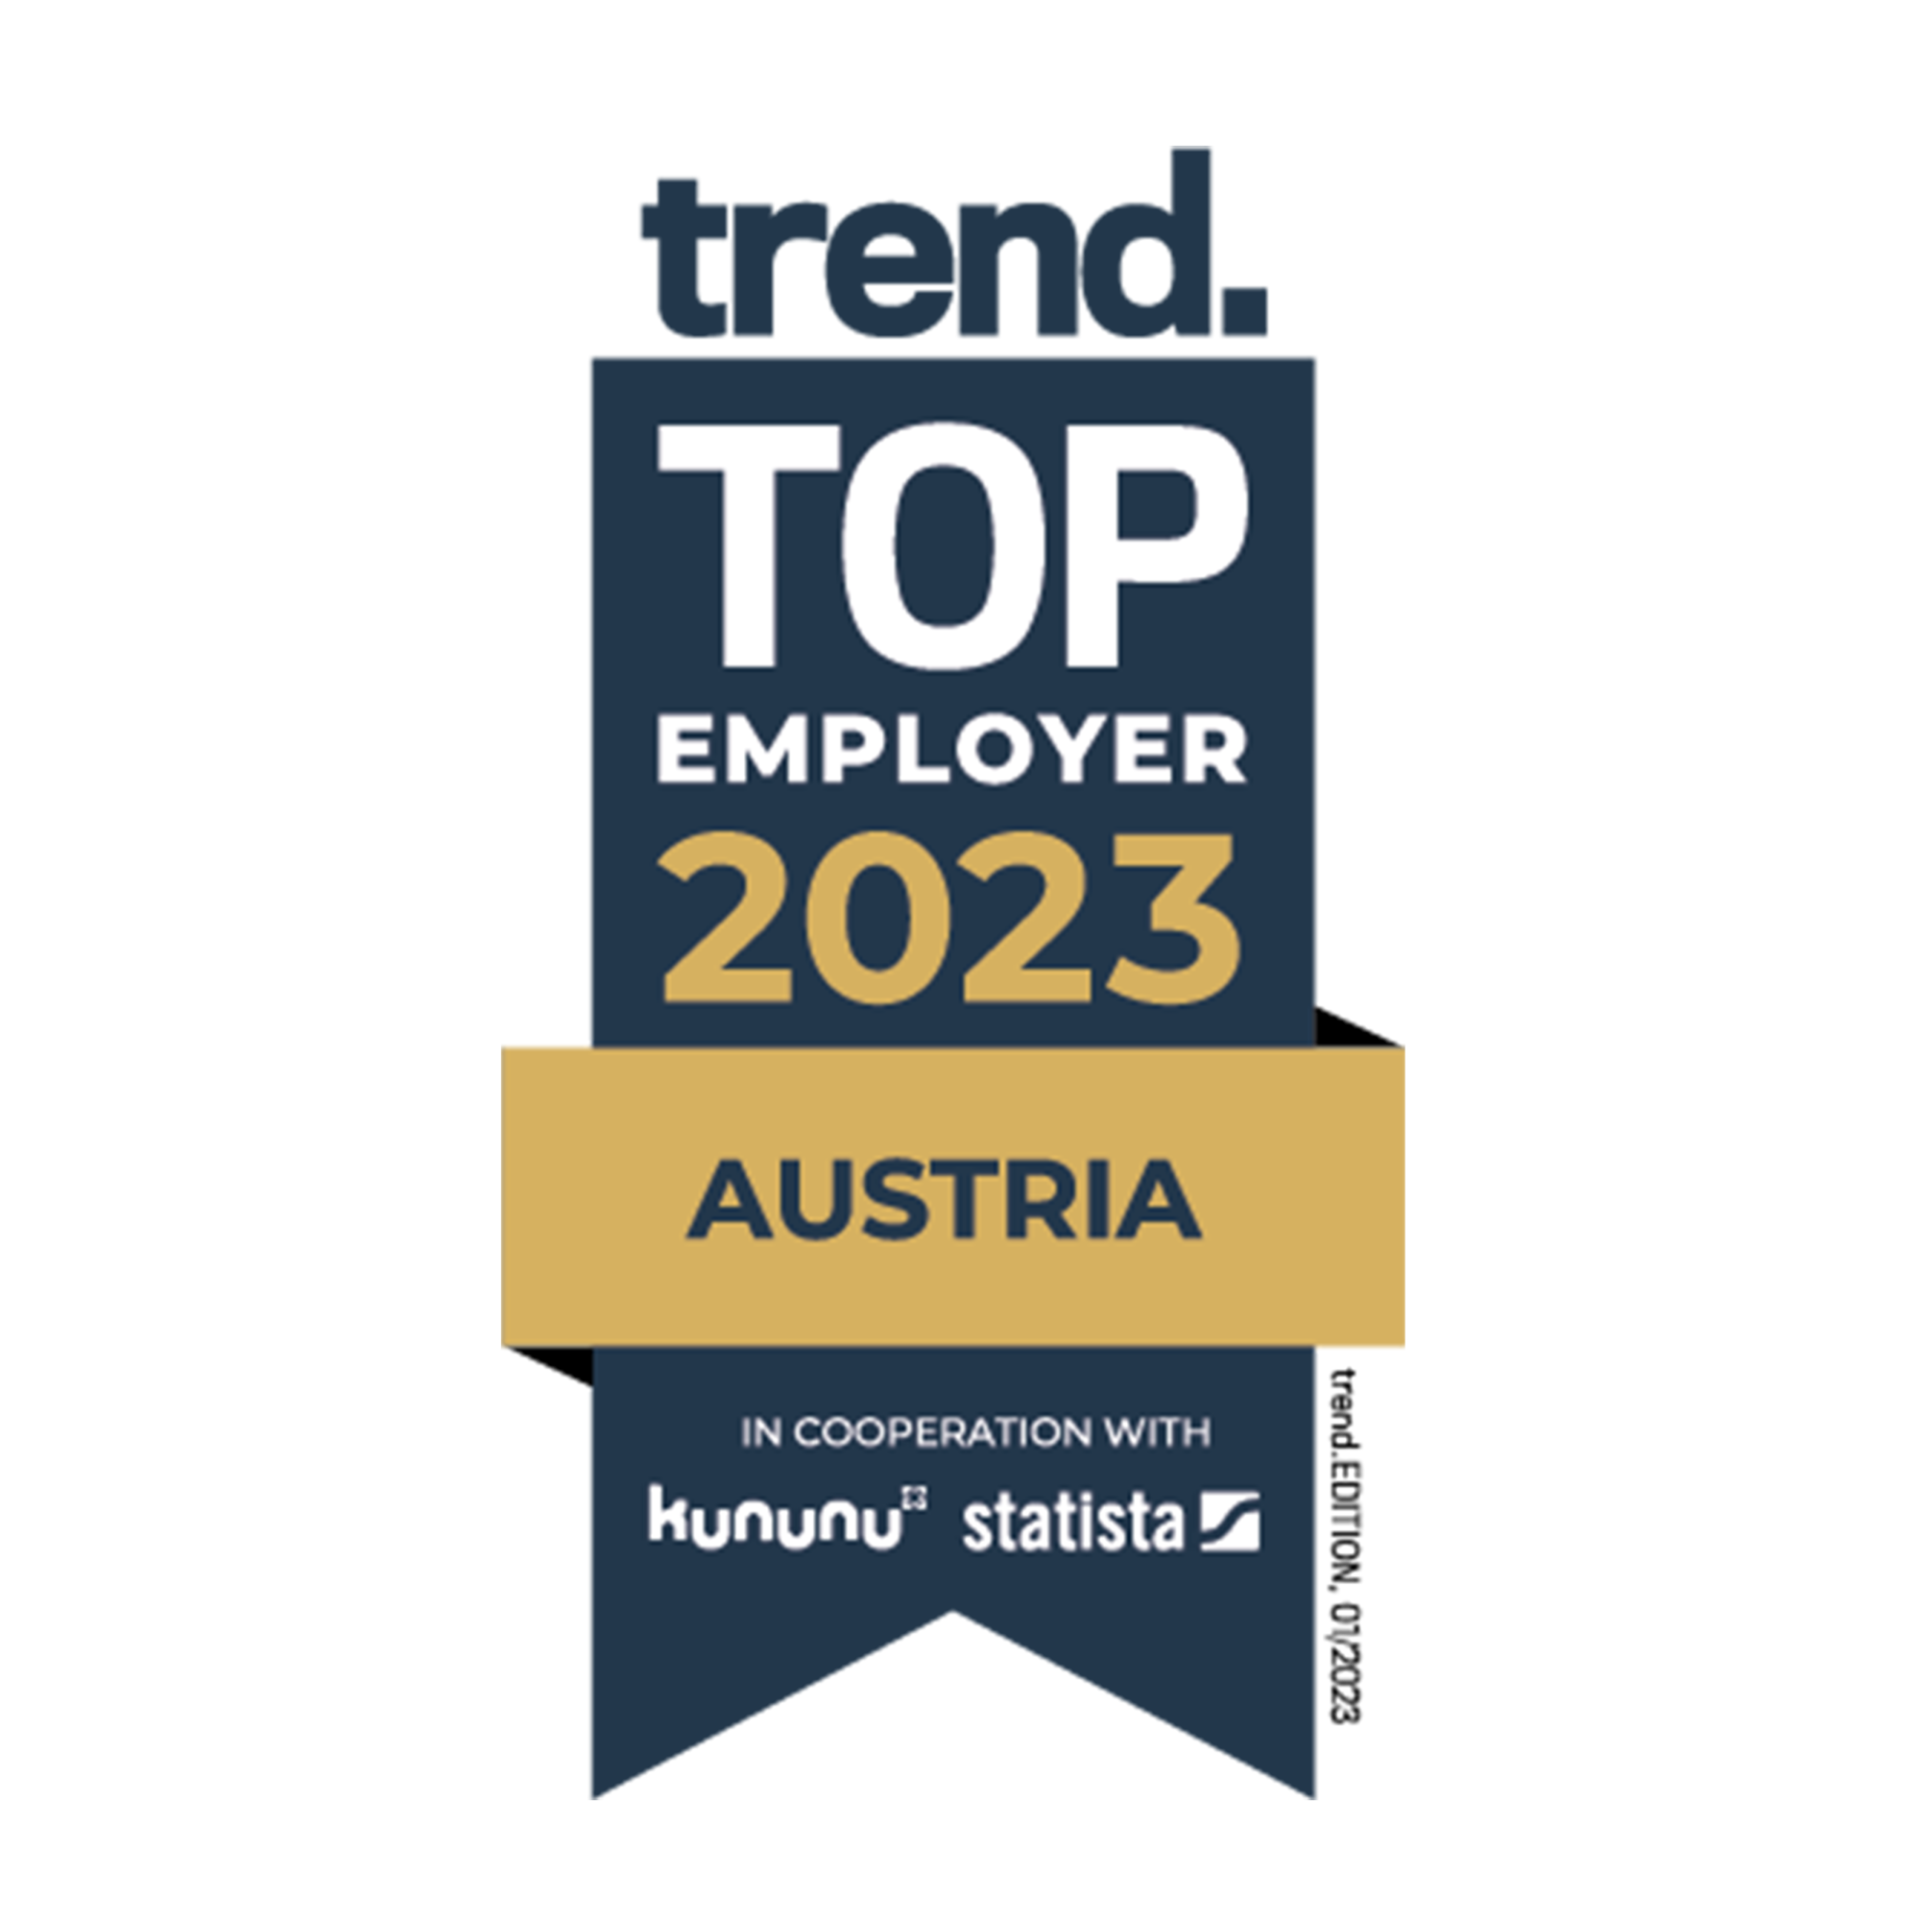 Mejor empleador en 2023 - Austria